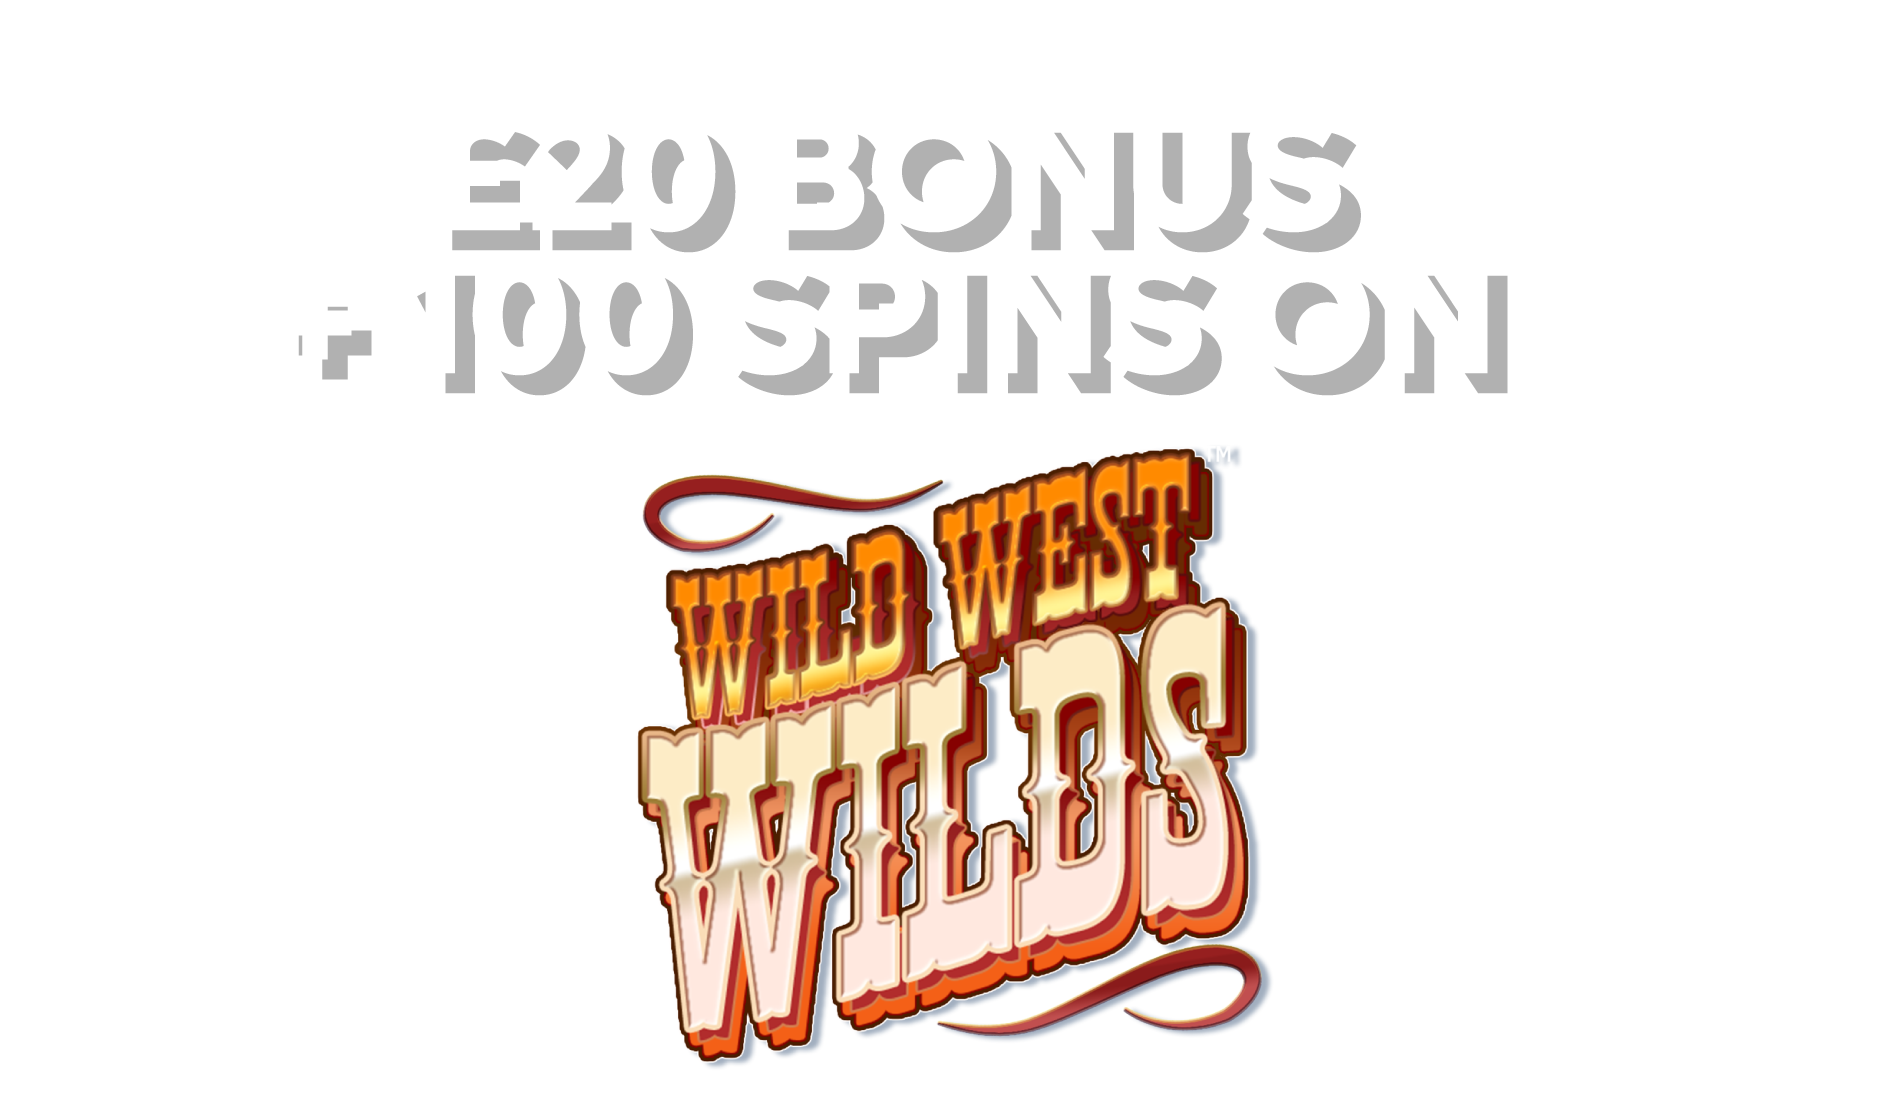 SPEND £5 GET £20 BONUS + 100 SPINS ON Wild West Wilds